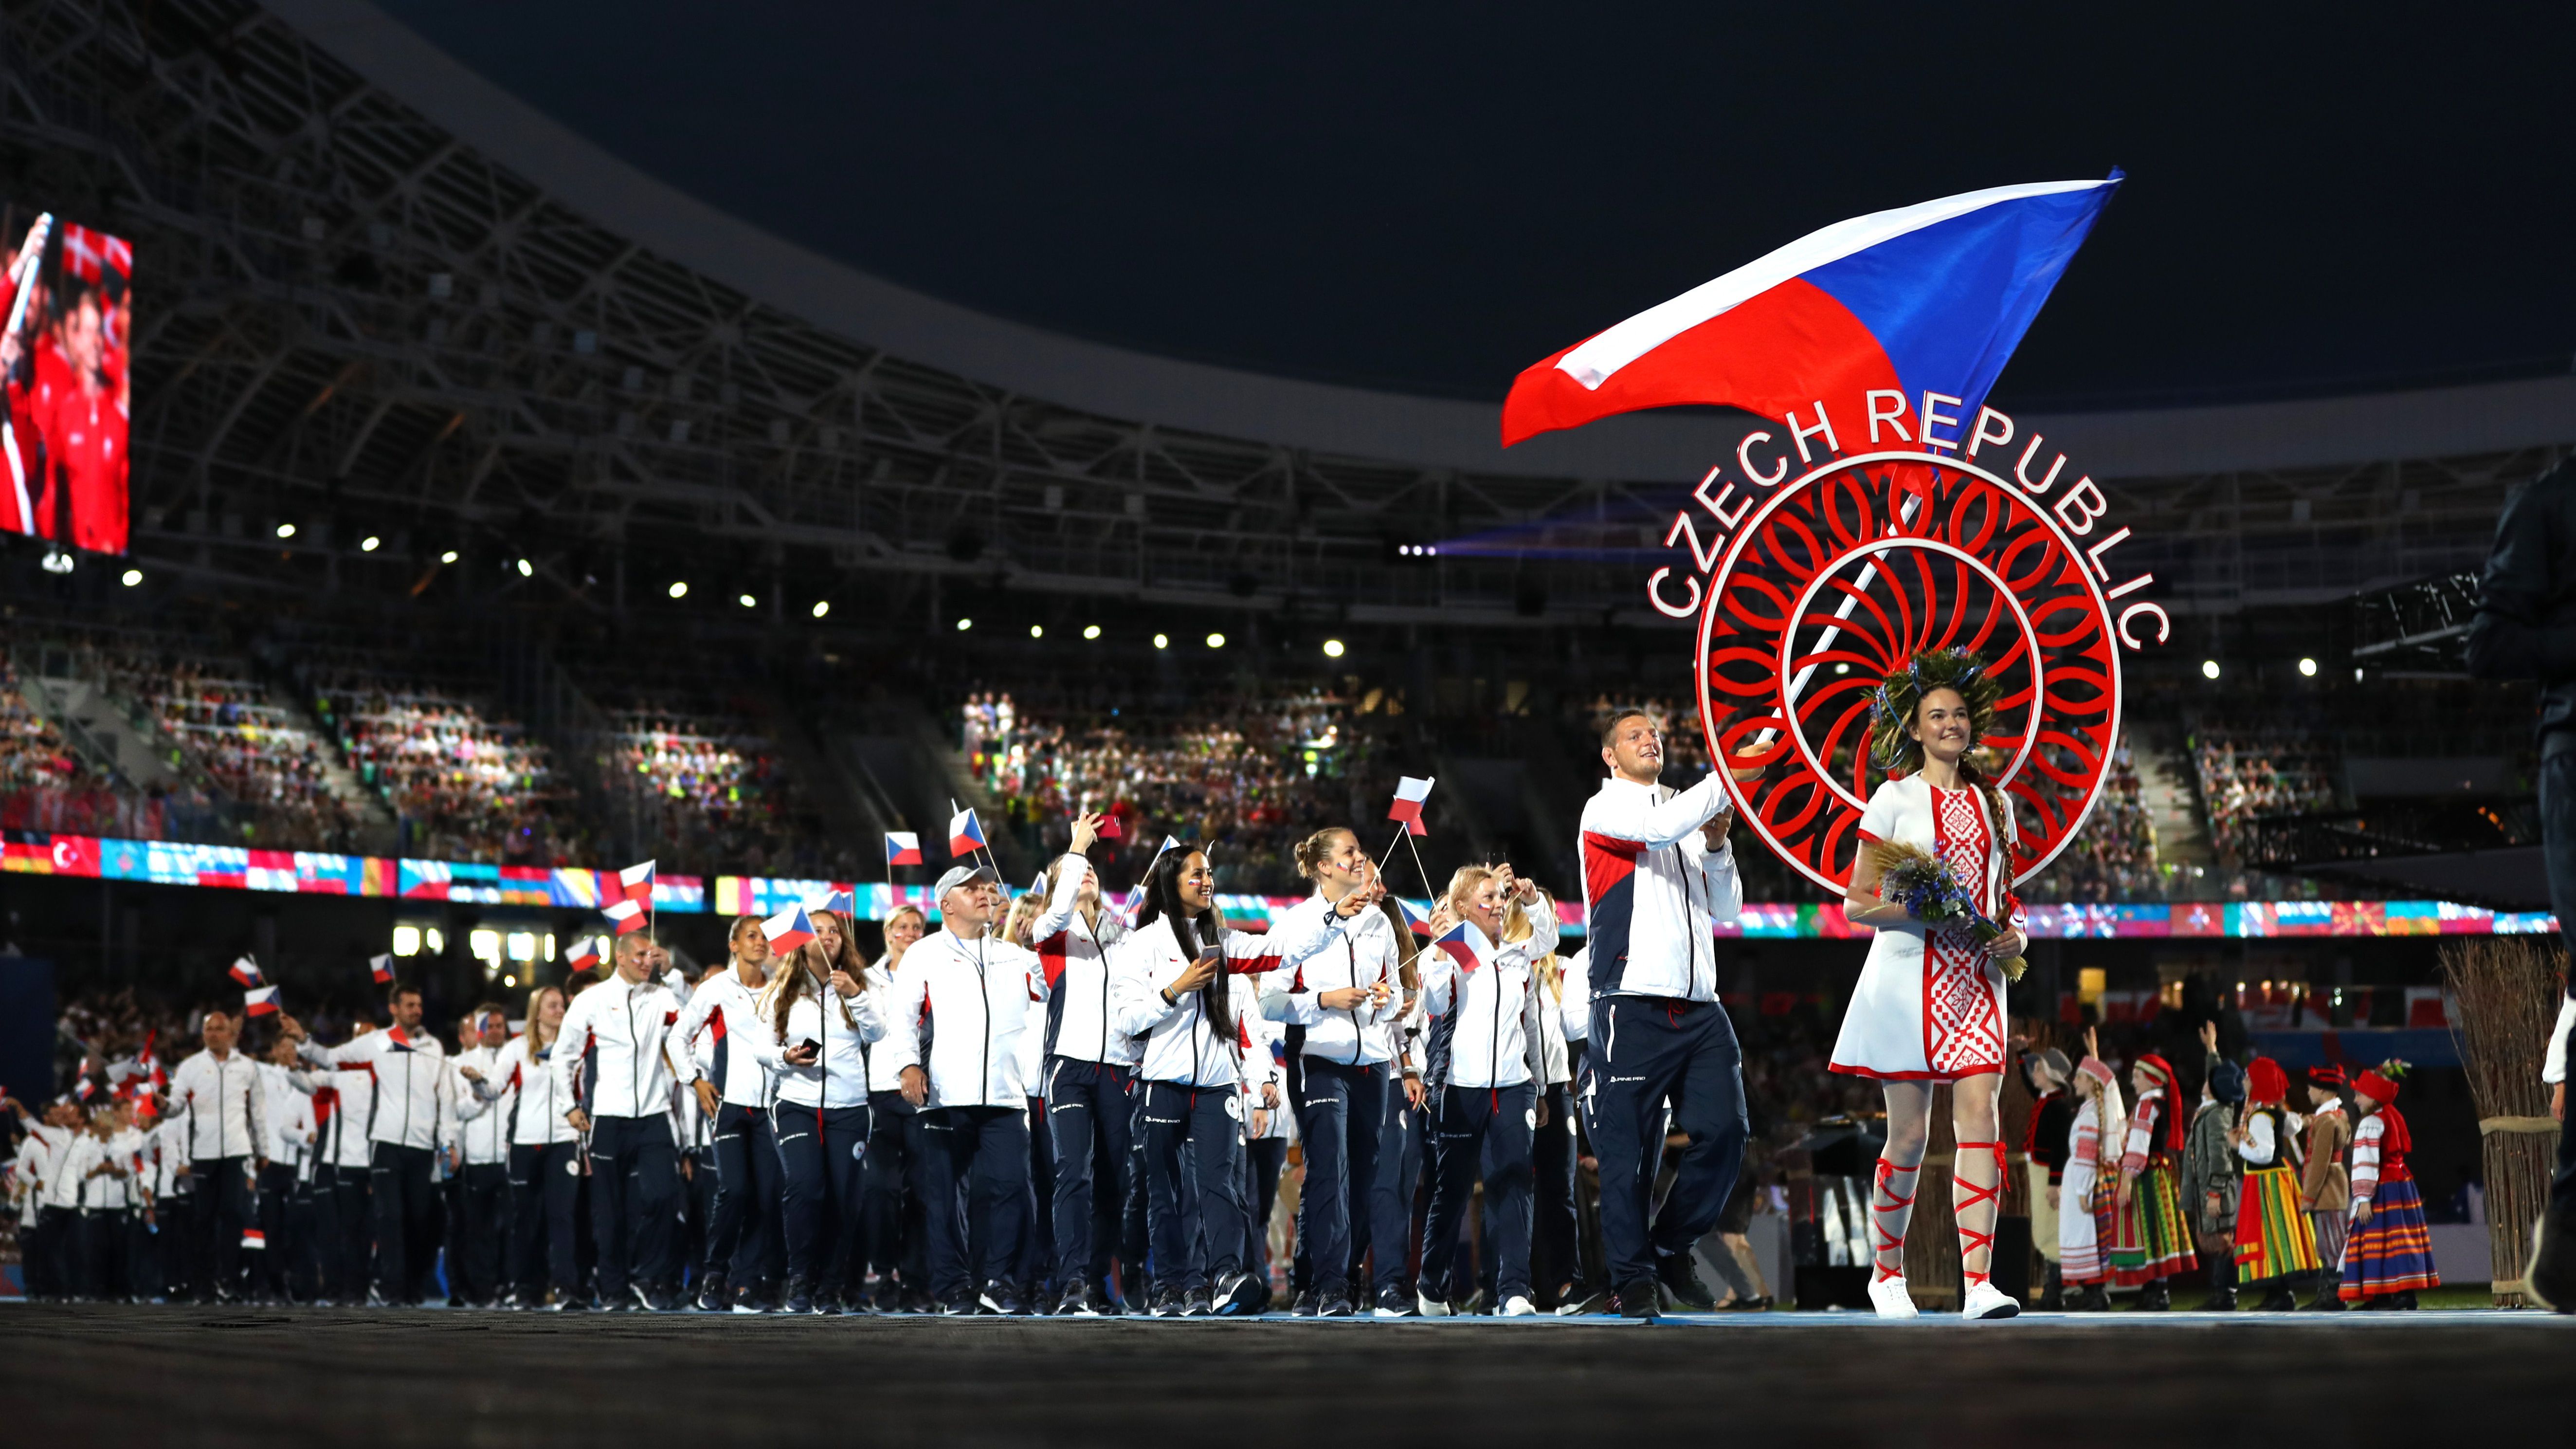 A csehek közel 200 fős csapattal számolnak az Európa Játékokon